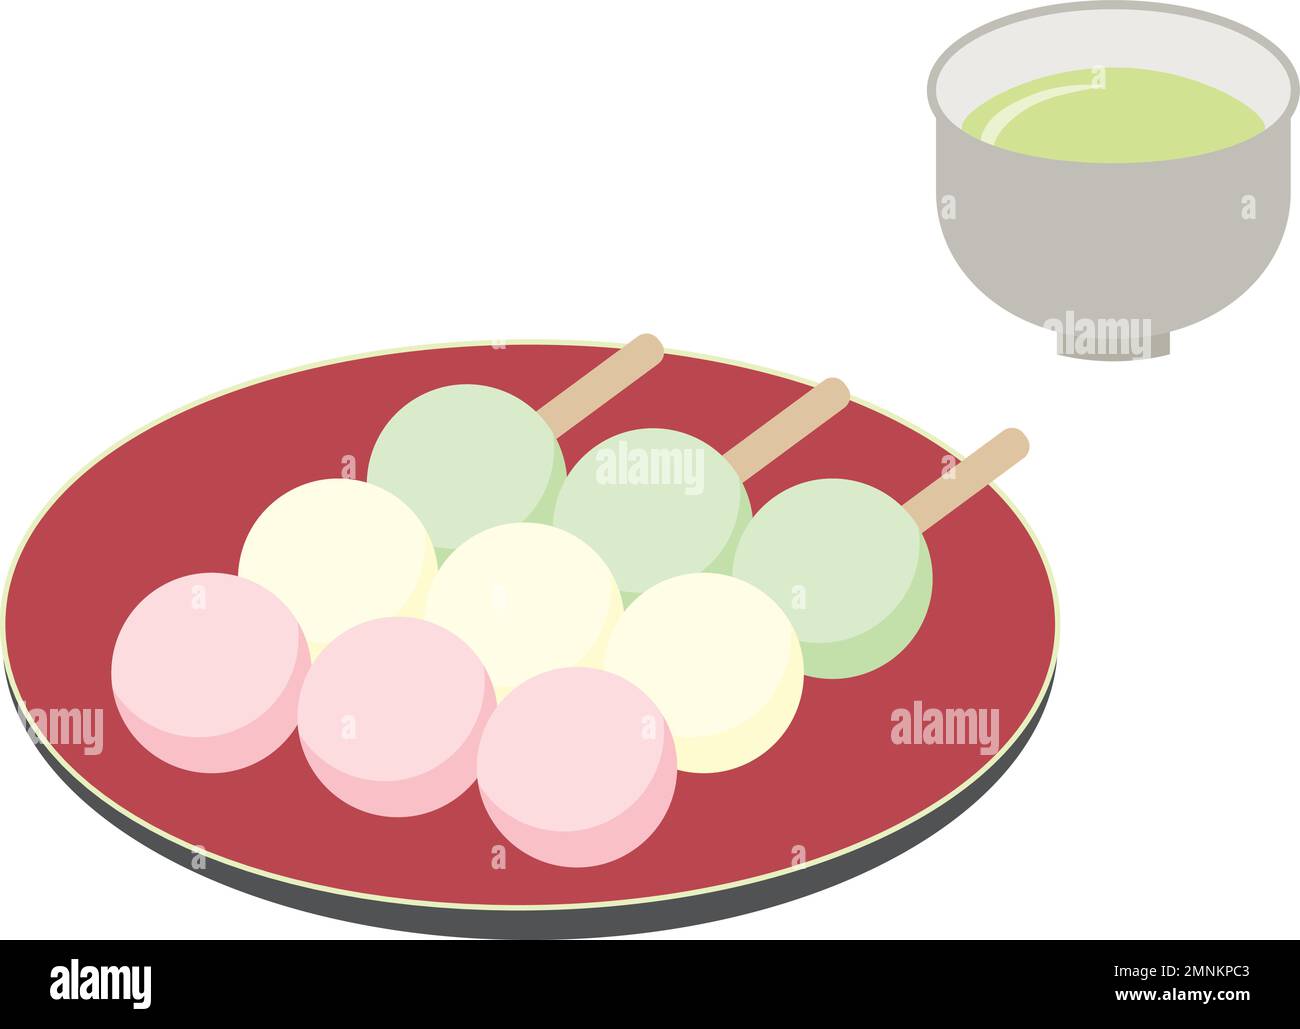 Dreifarbige Knödel und japanischer Tee. Süße und einfache, flache Illustrationen. Stock Vektor